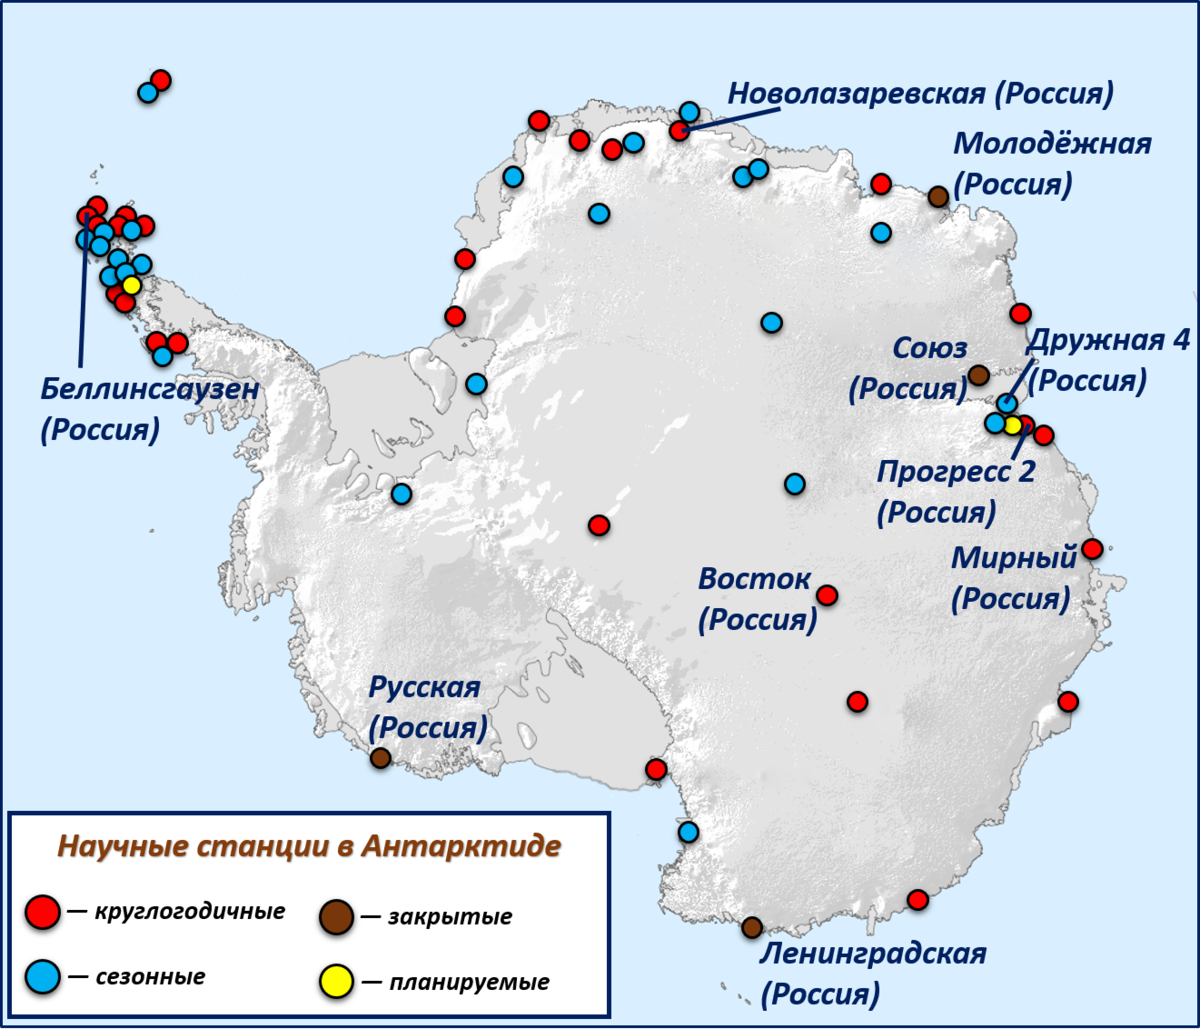 Название антарктических станций. Карта научные Полярные станции Антарктиды. Полярные станции в Антарктиде на карте. Станции России в Антарктиде на карте. Научные станции в Антарктиде на карте.